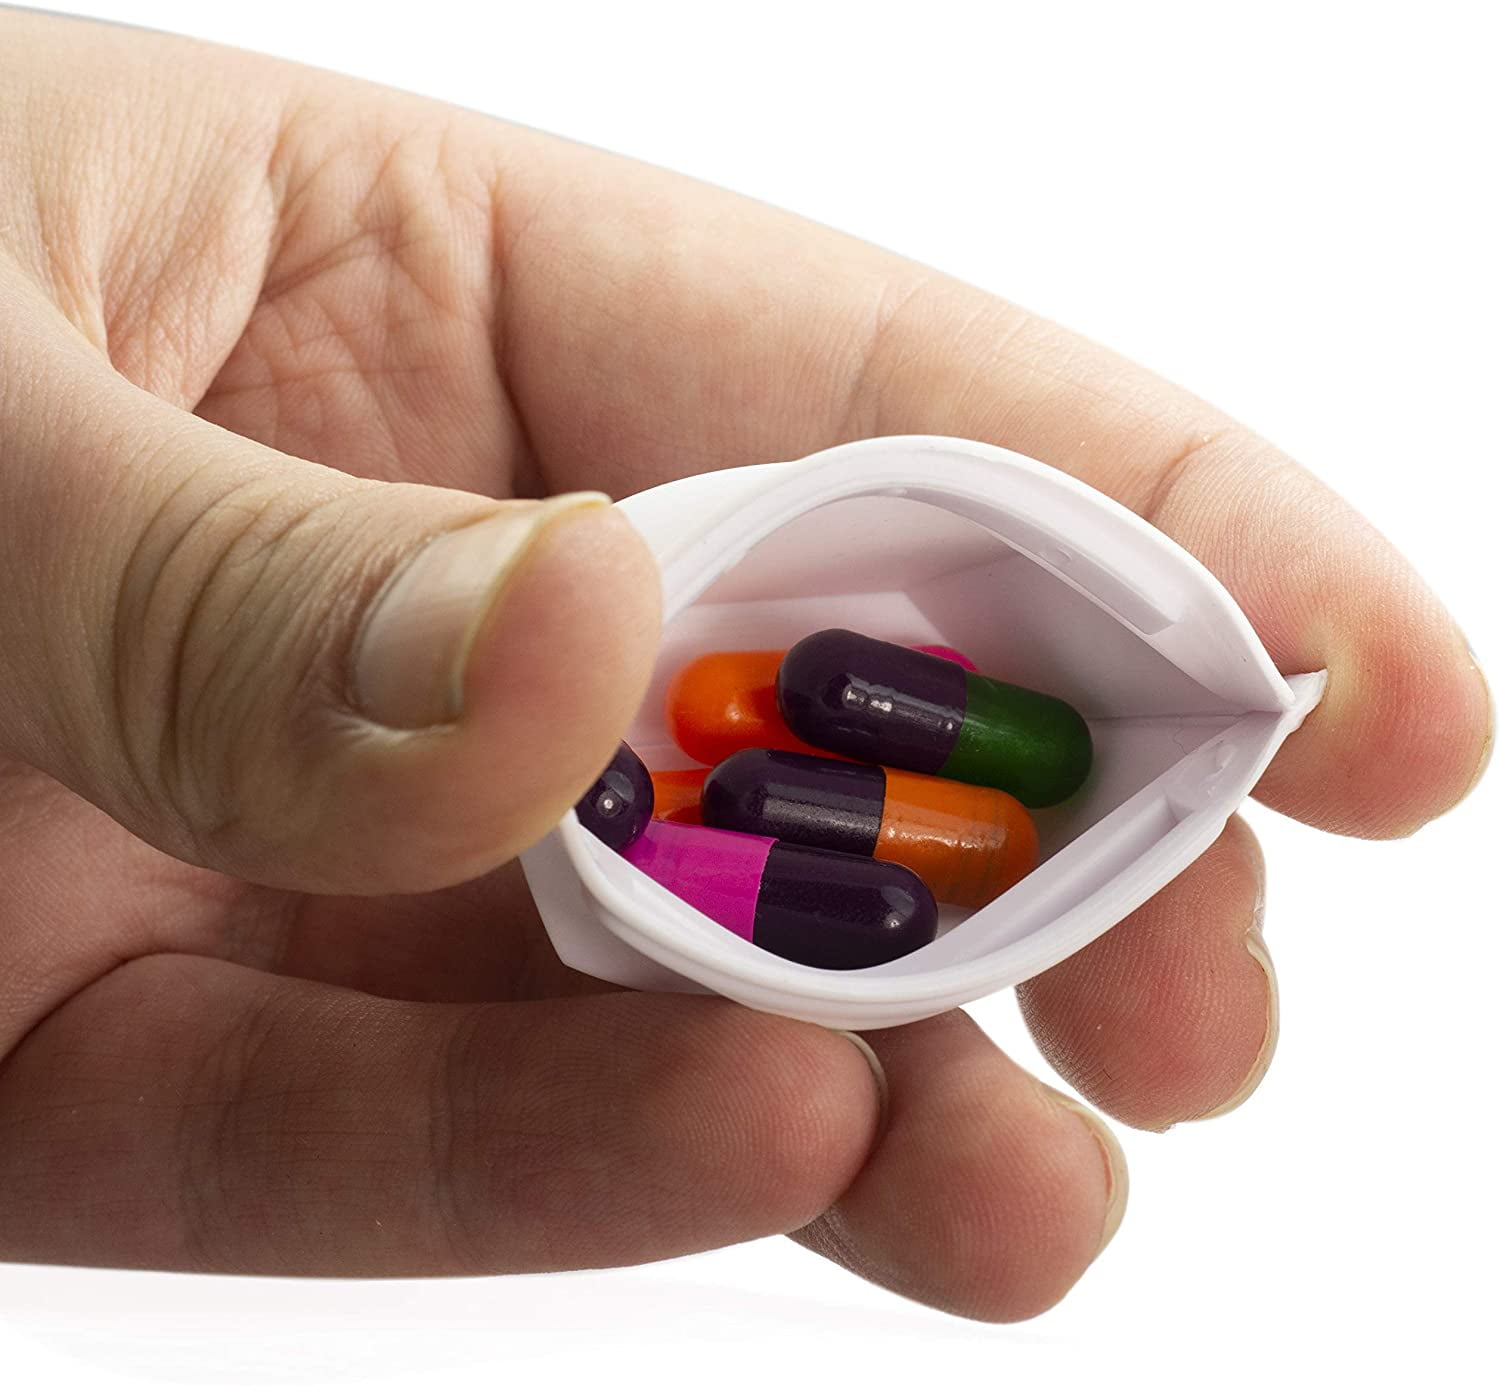  Pill Pouch Bags Zippered Pill Pouch Set Reusable Pill